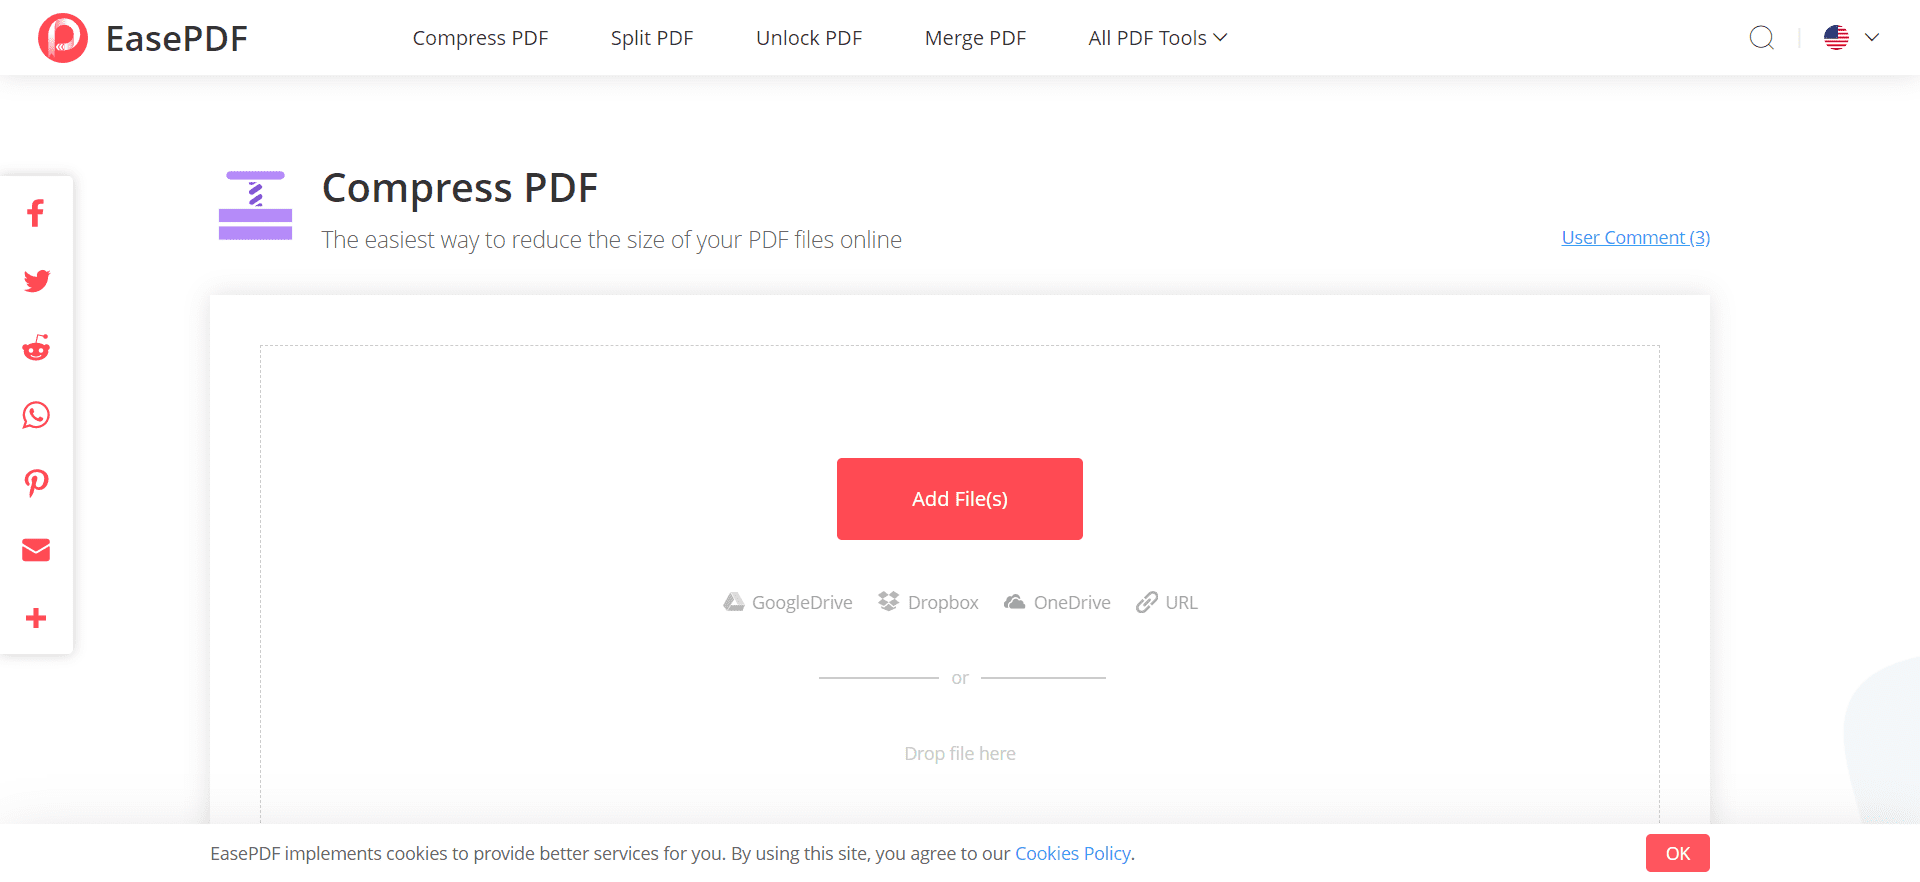 ضغط ملفات PDF